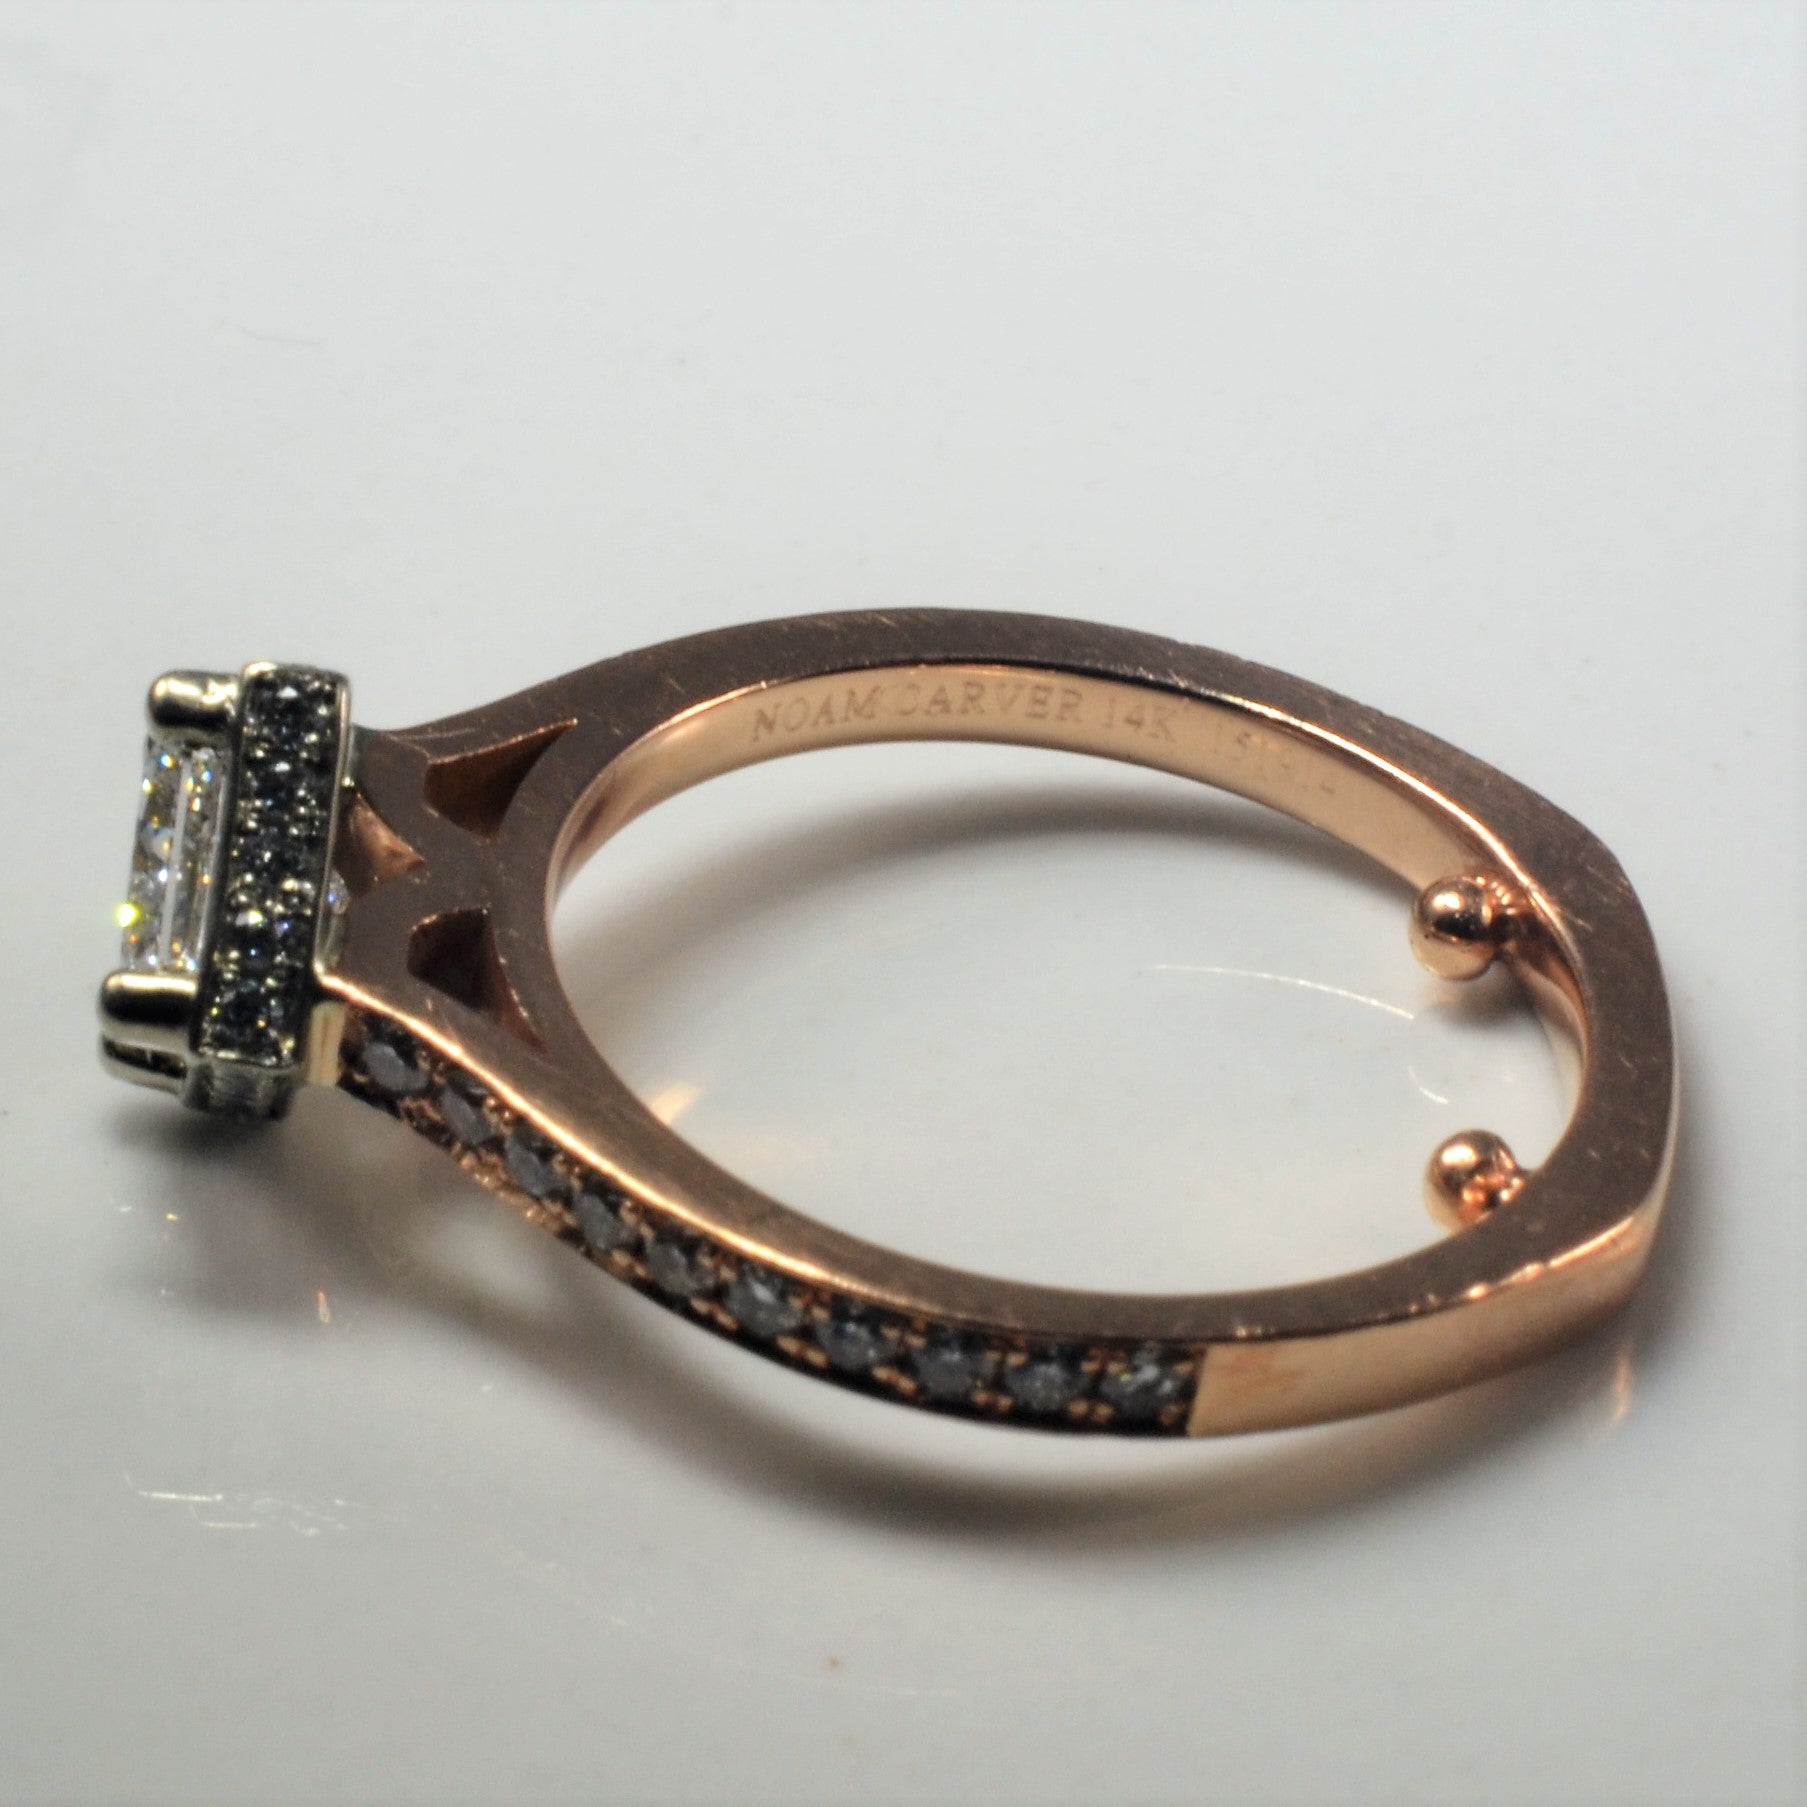 Noam Carver' East West Princess Diamond Engagement Ring | 0.94ctw | SZ 4.75 |